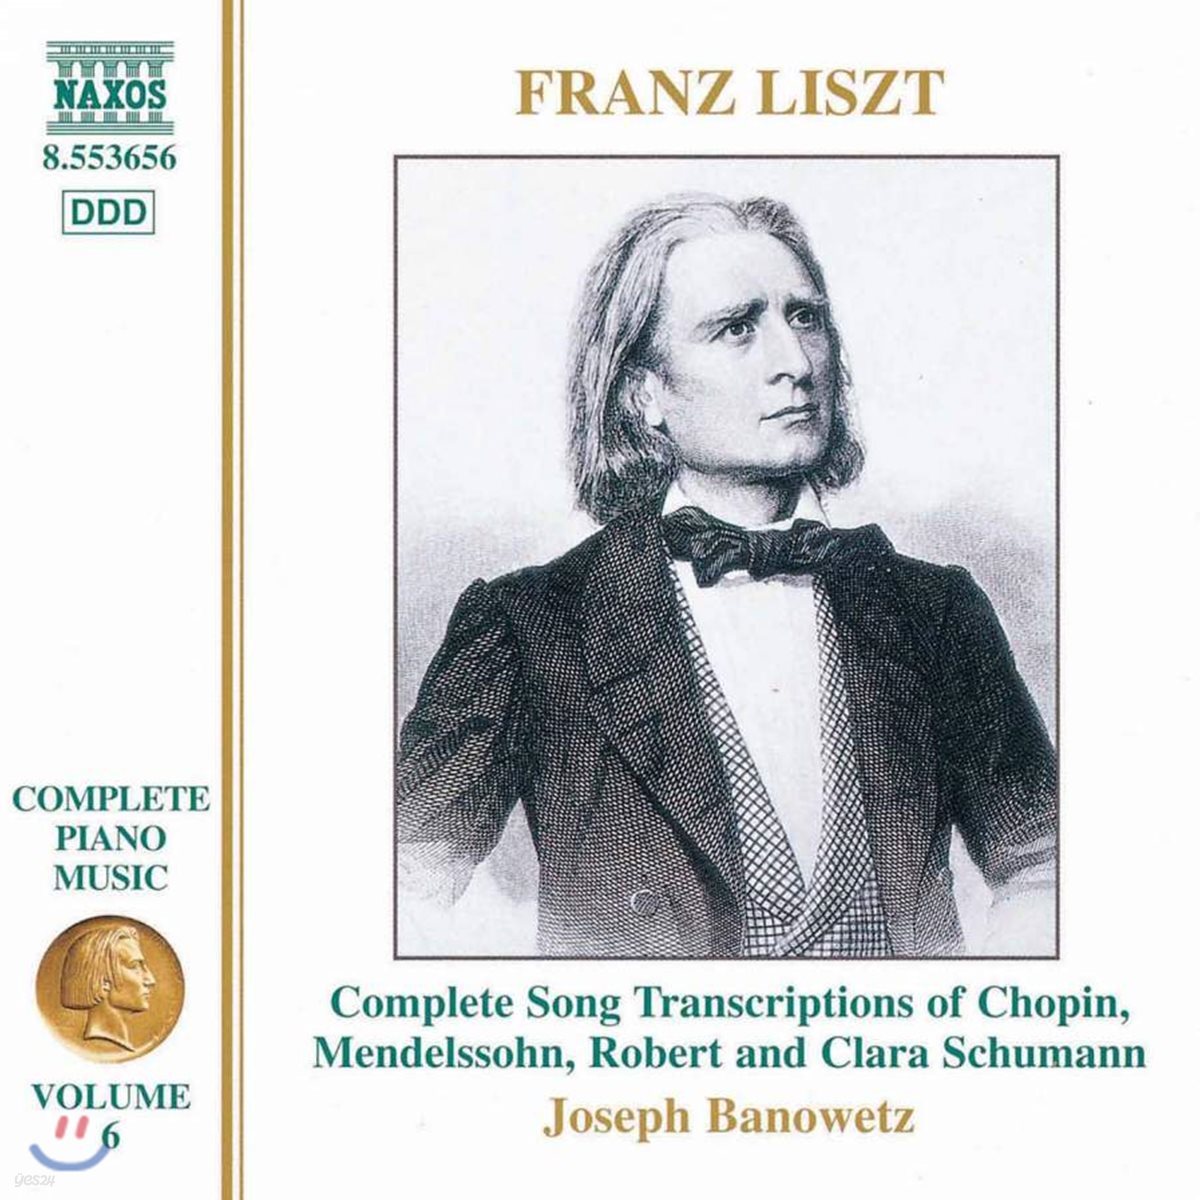 Joseph Banowetz 리스트: 피아노 편곡집 - 쇼팽/ 멘델스존/ 슈만/ 클라라 슈만 (Liszt: Complete Piano Music Volume 6)